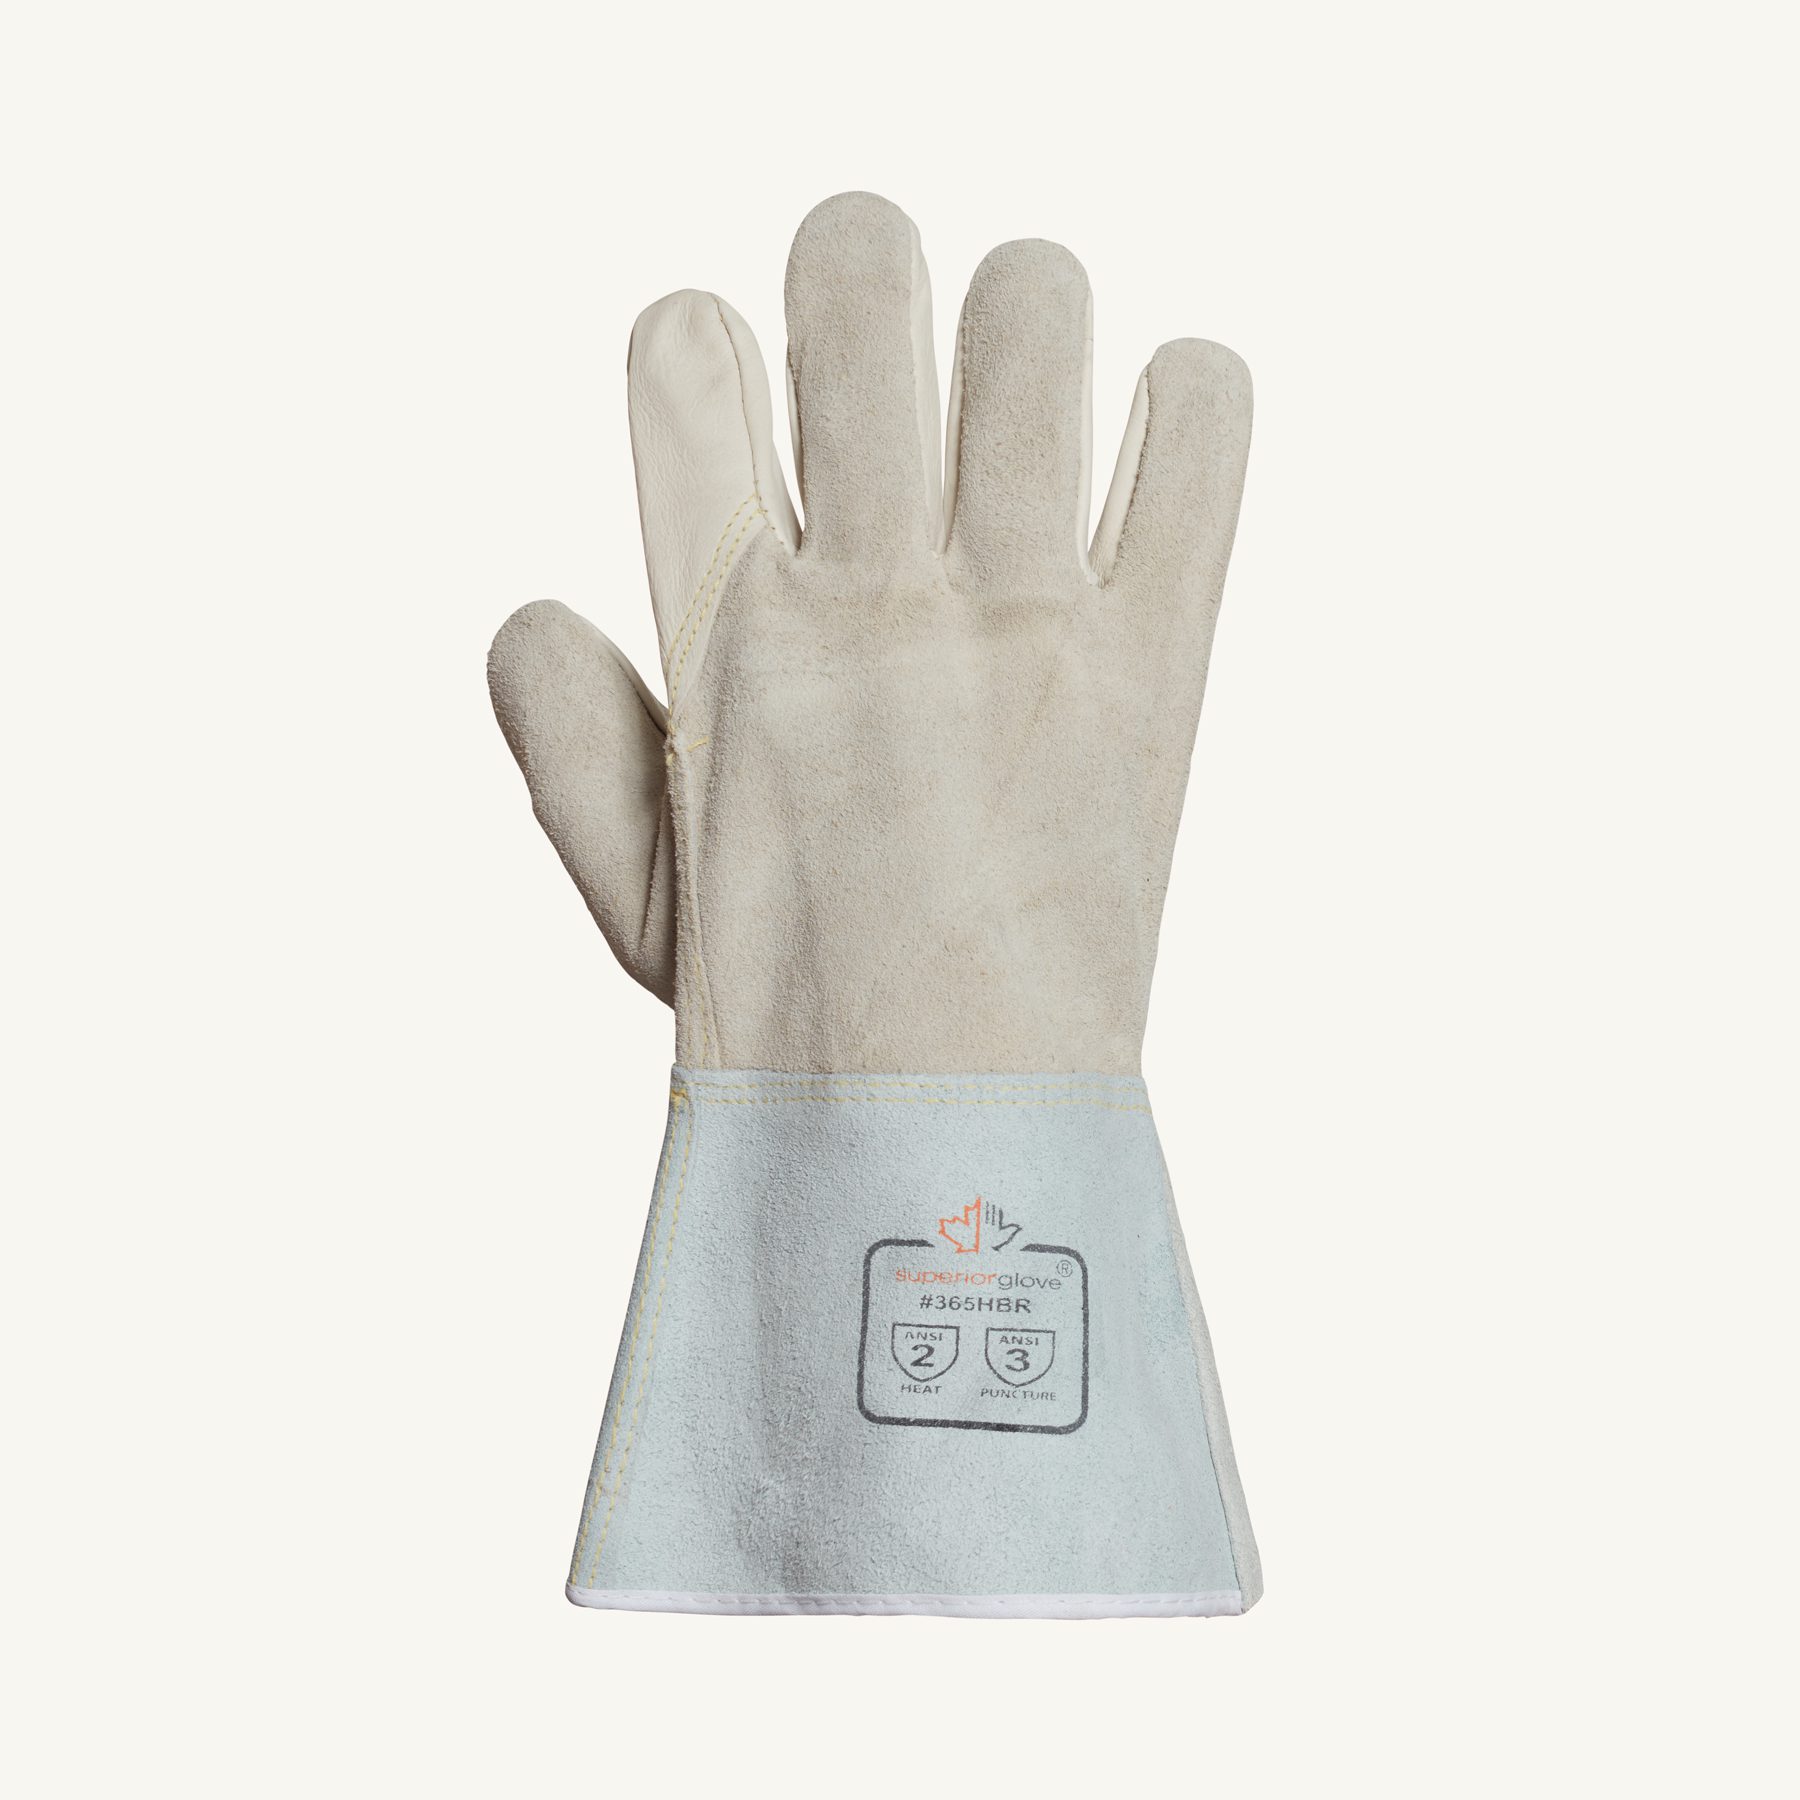 #365HBR Superior Glove® Endura® Heavy-Duty Horsehide TIG Welding Glove